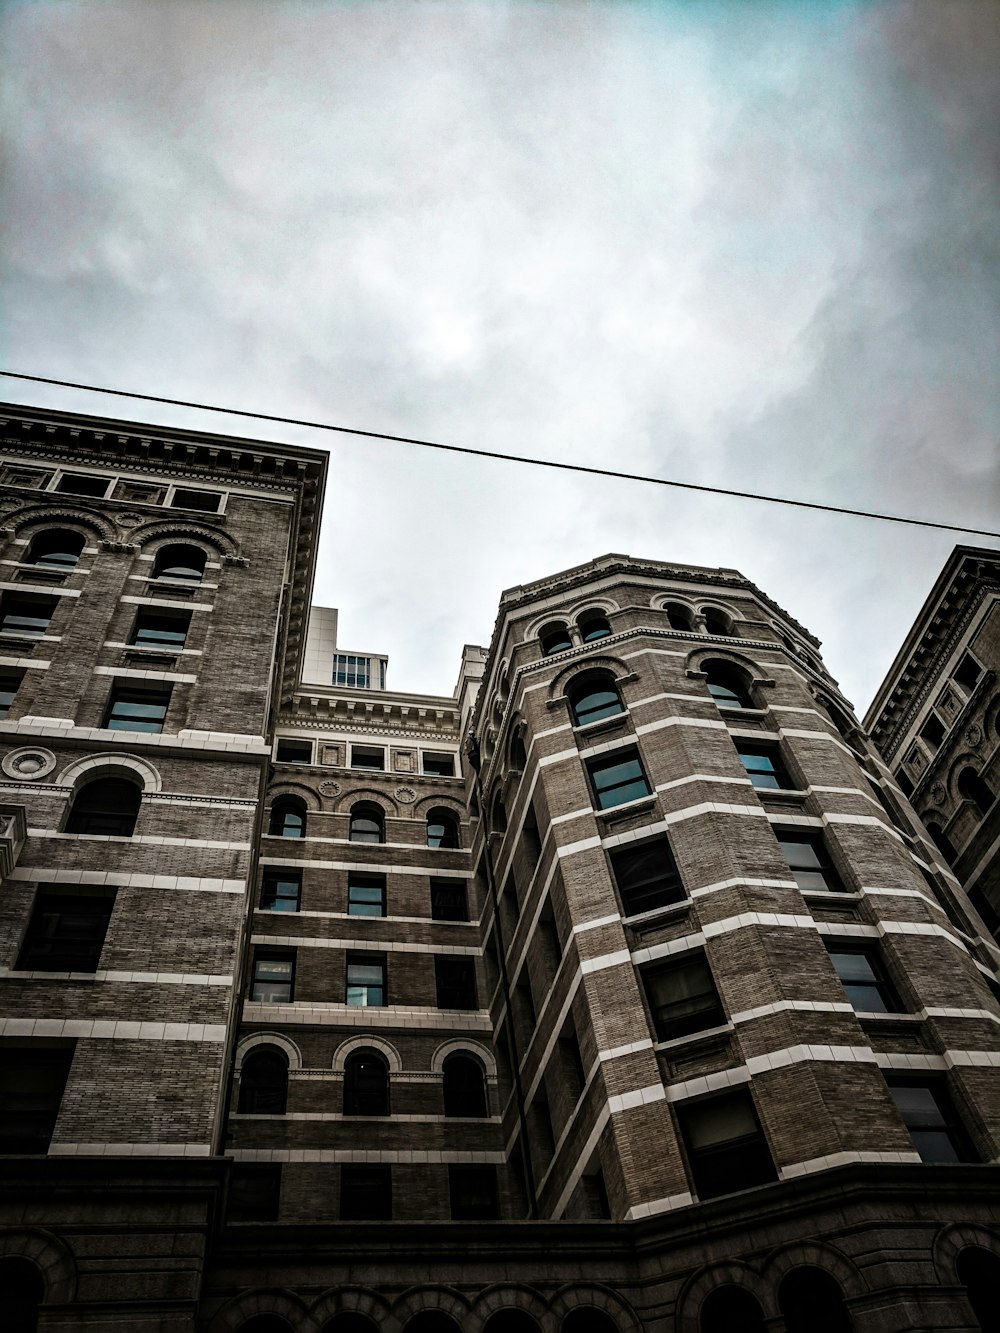 茶色のコンクリートの建物のローアングル写真